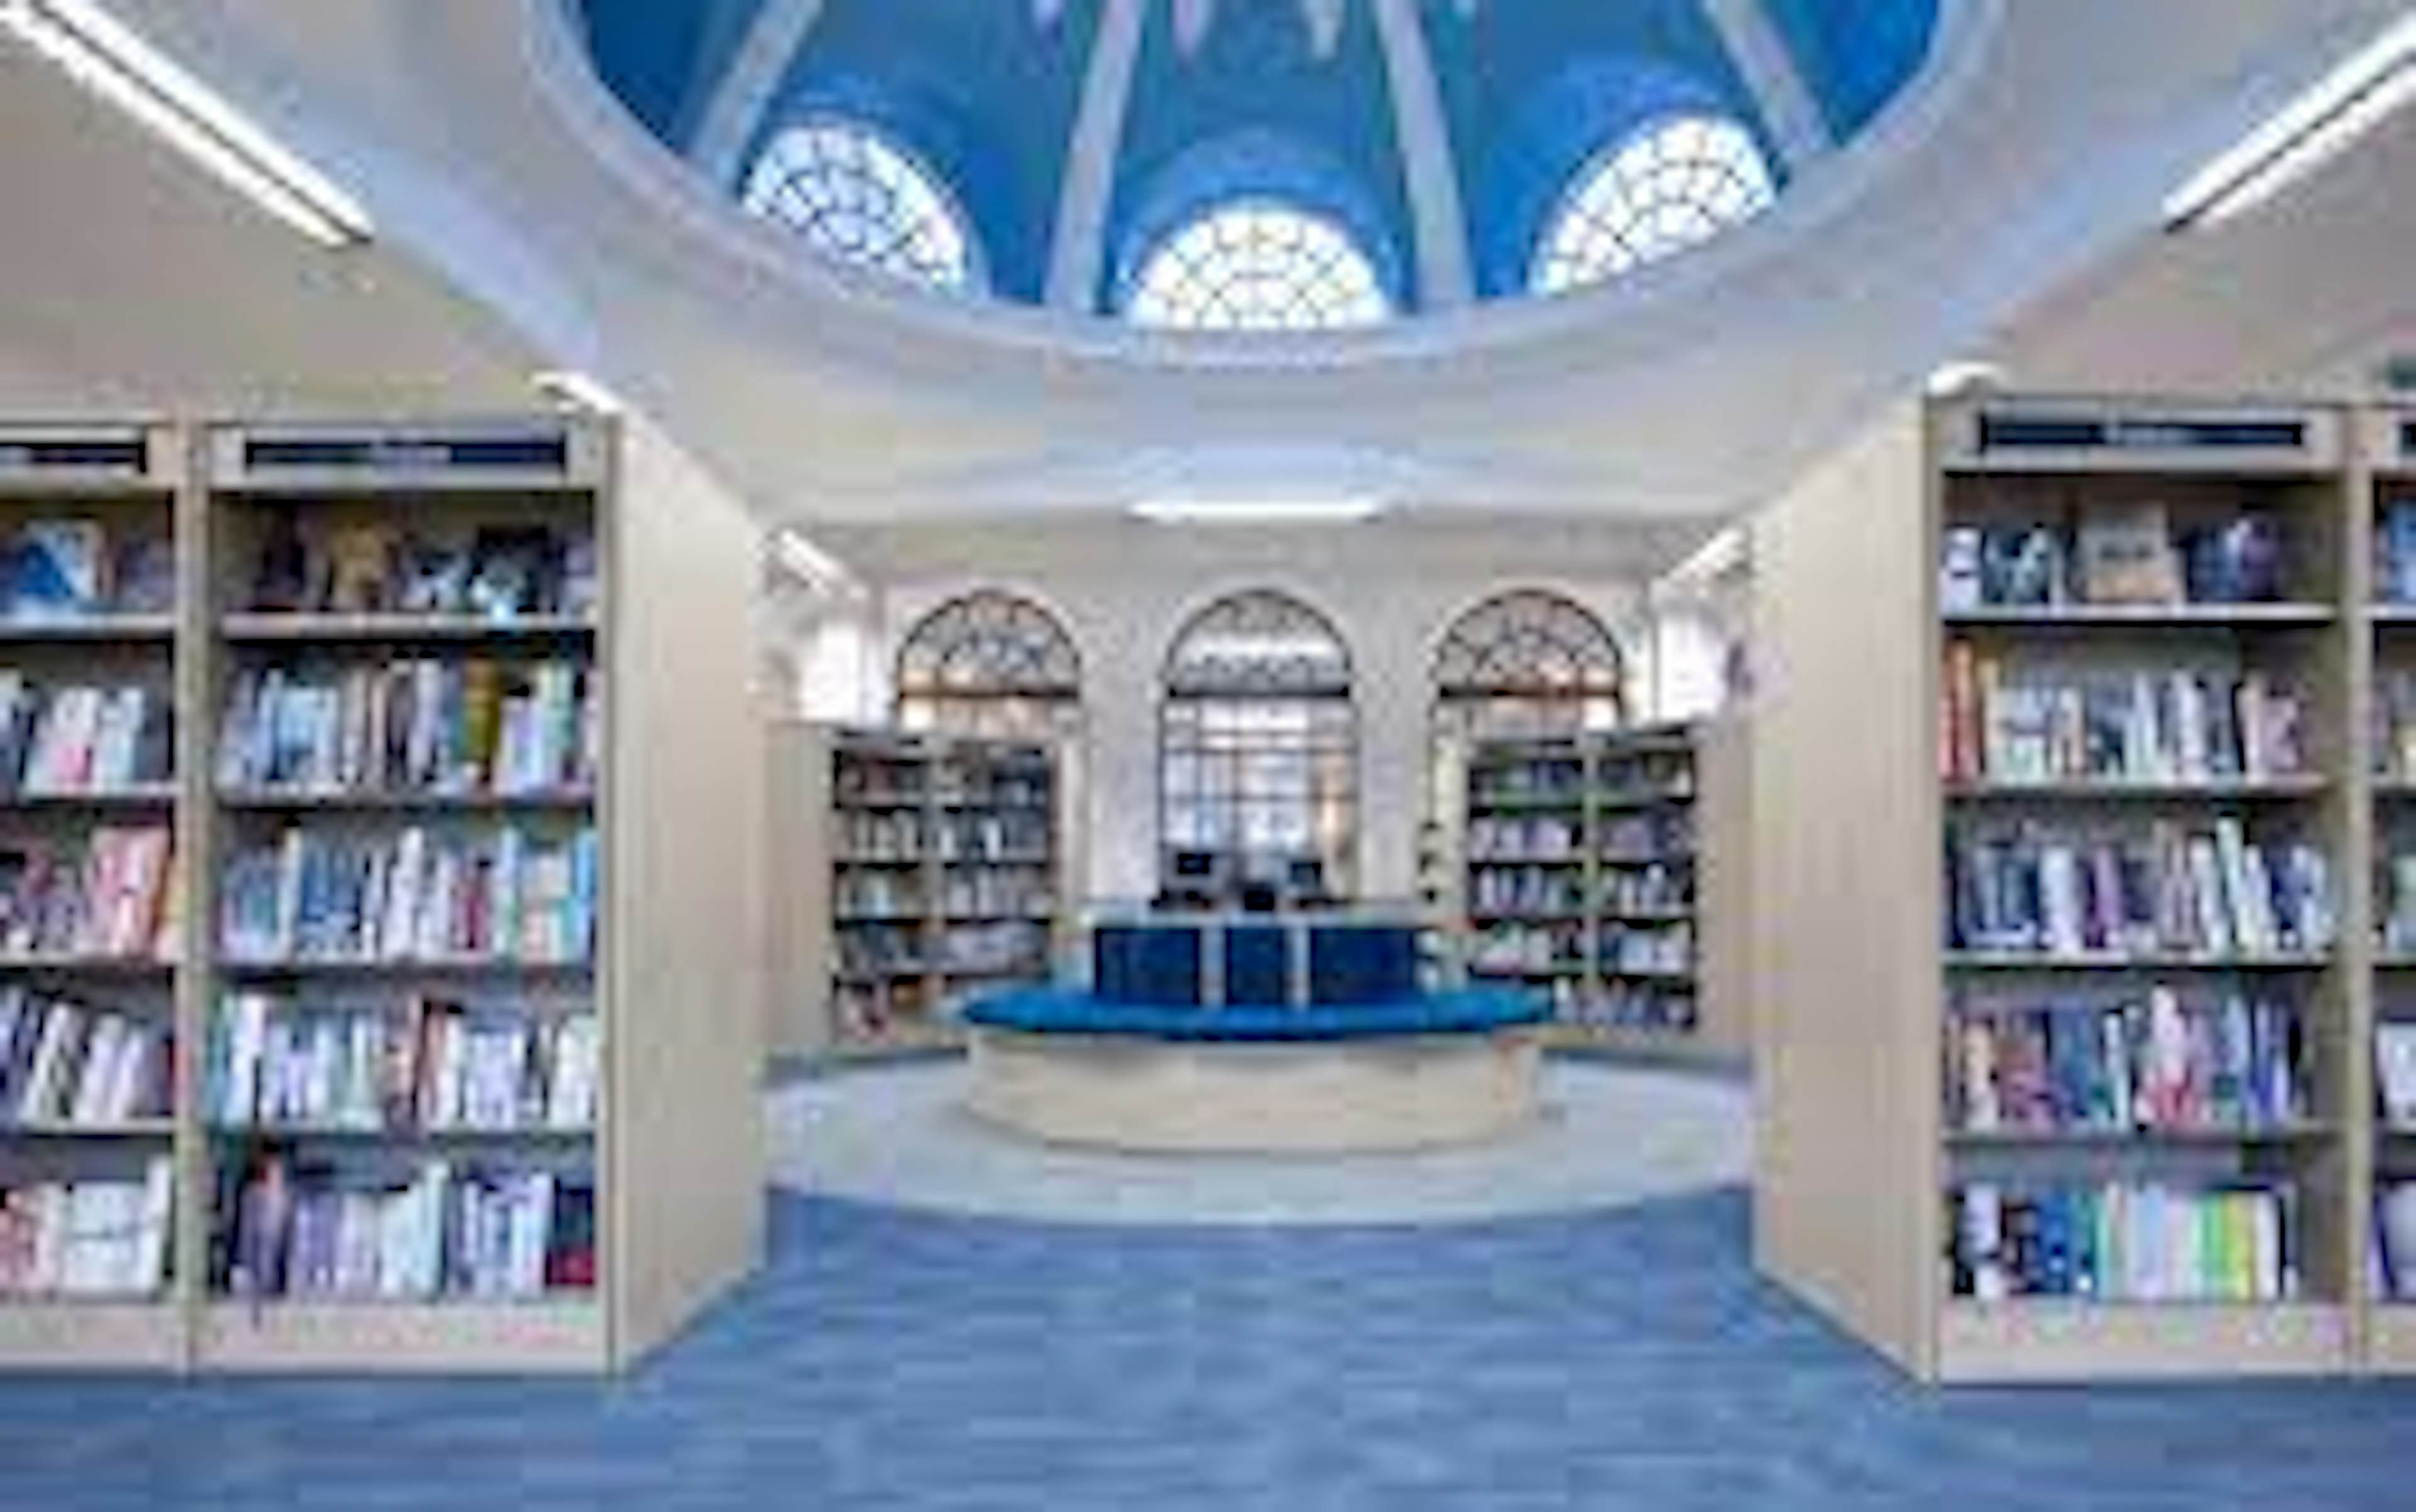 West Greenwich Library - West Greenwich Library image 1